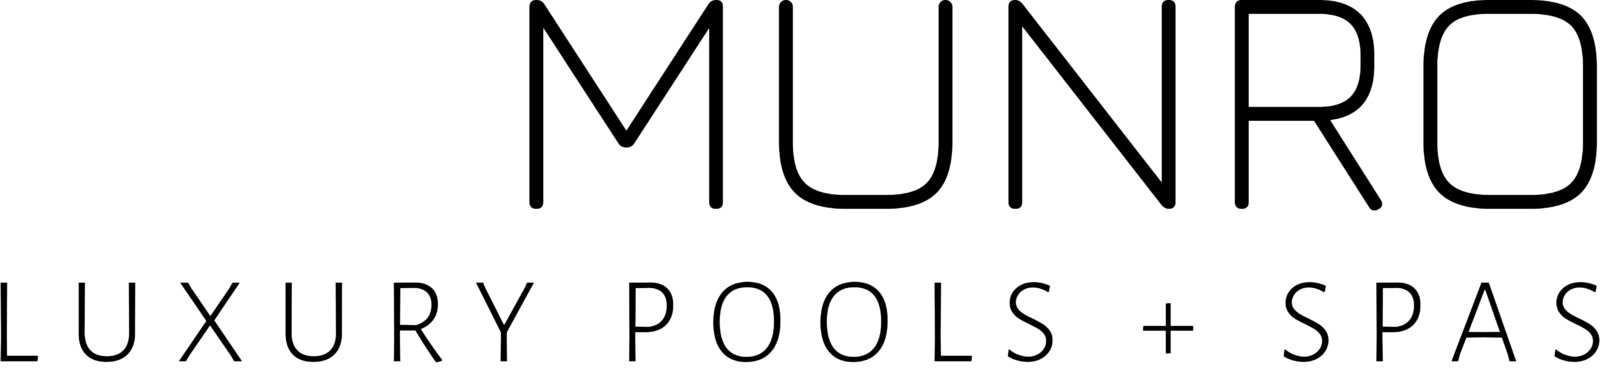 Munro Luxury Pools + Spas – Collingwood Pools and Spas